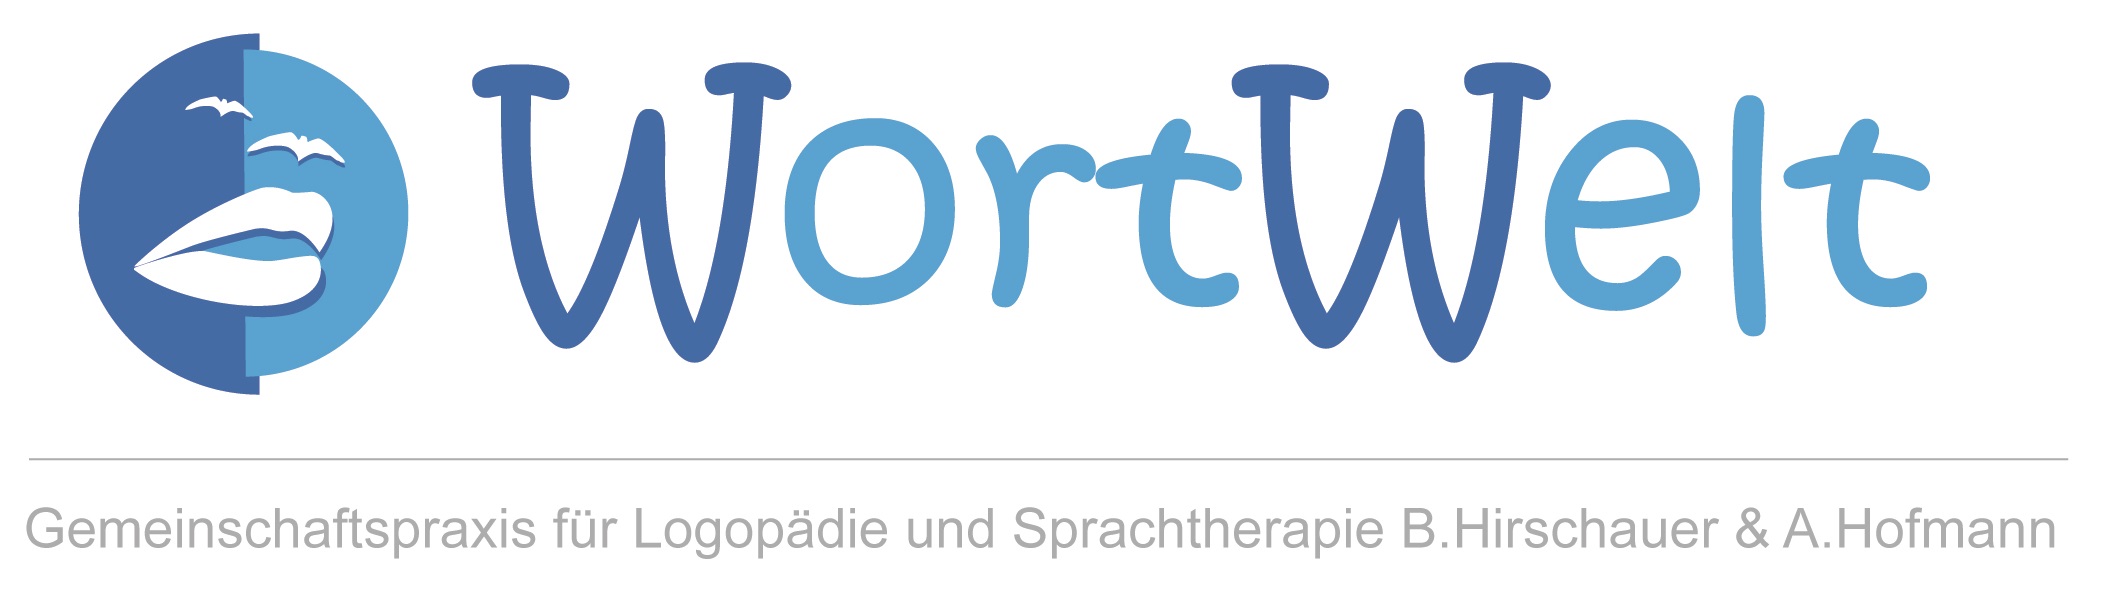 WortWelt - Gemeinschaftspraxis für Logopädie und Sprachtherpaie